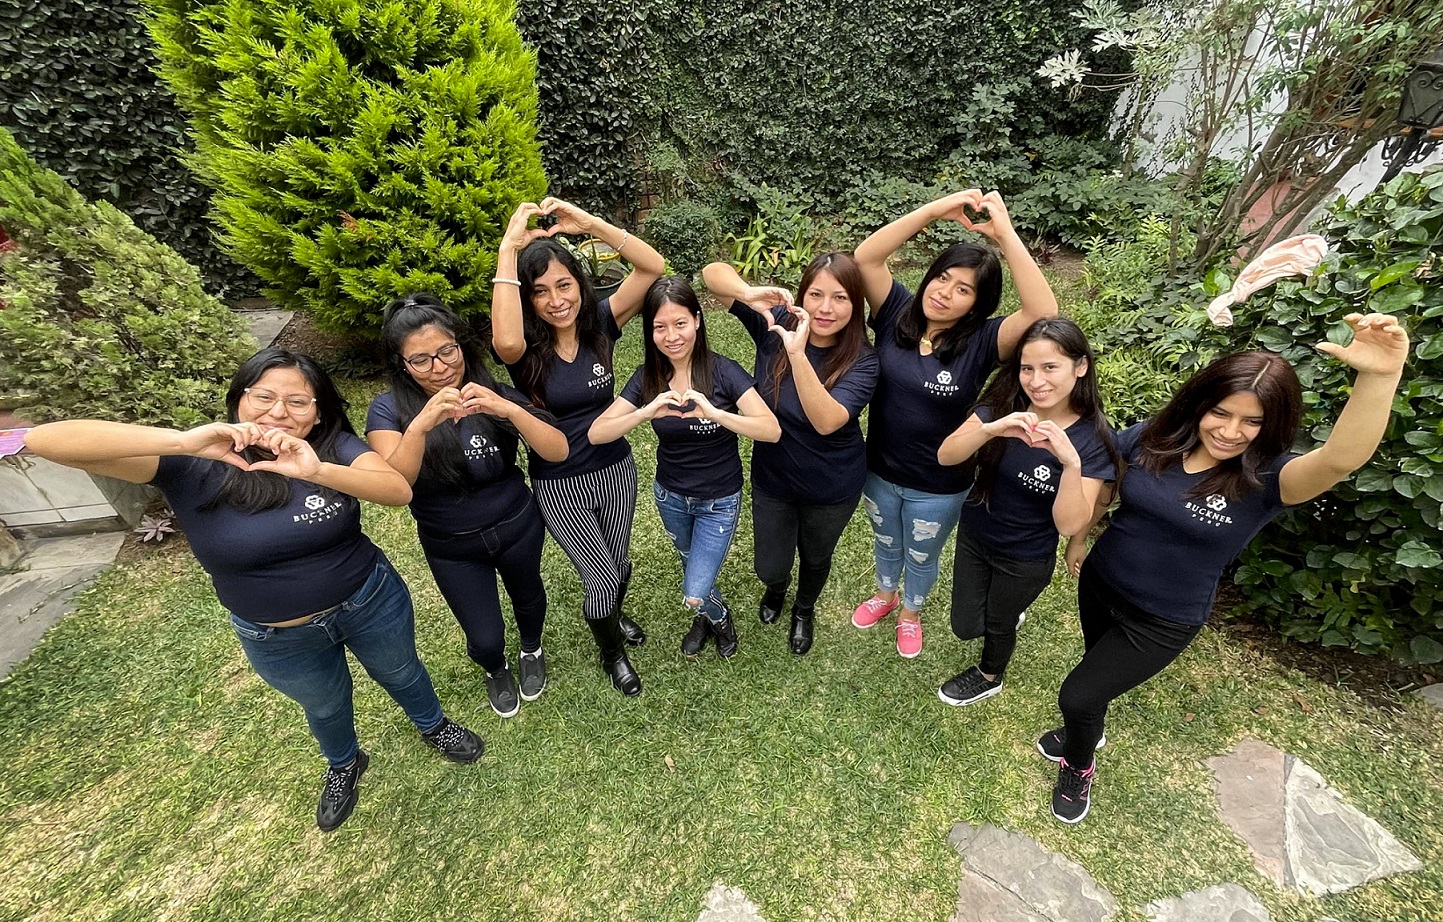 Jóvenes del Bicentenario: La campaña de la ONG Buckner Perú que impulsa a jóvenes mujeres a seguir sus sueños